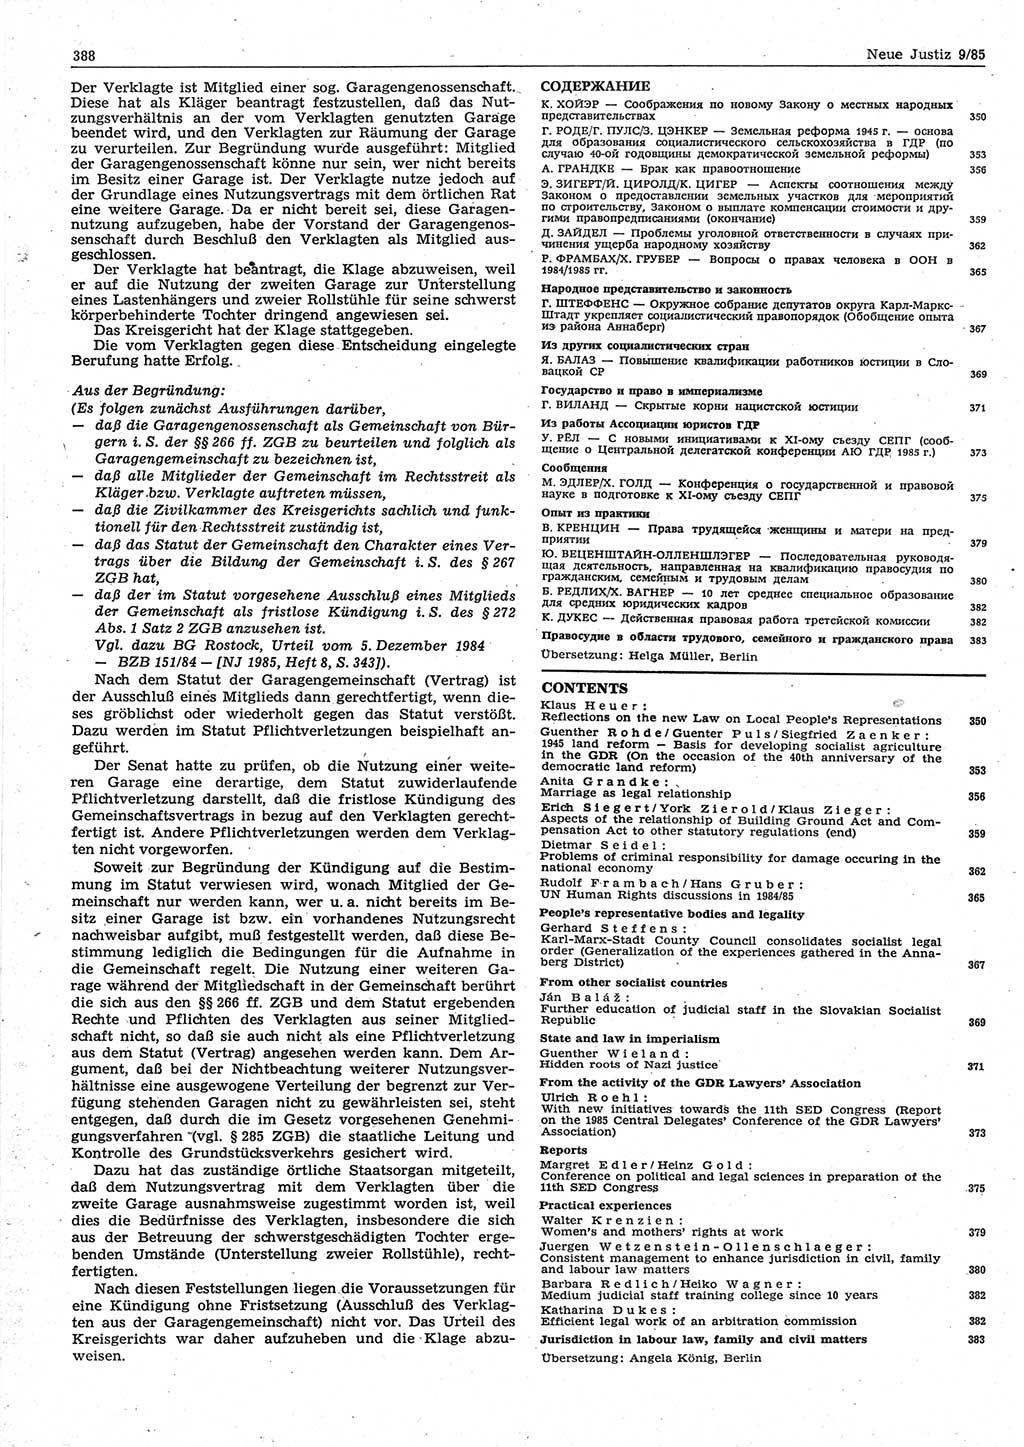 Neue Justiz (NJ), Zeitschrift für sozialistisches Recht und Gesetzlichkeit [Deutsche Demokratische Republik (DDR)], 39. Jahrgang 1985, Seite 388 (NJ DDR 1985, S. 388)